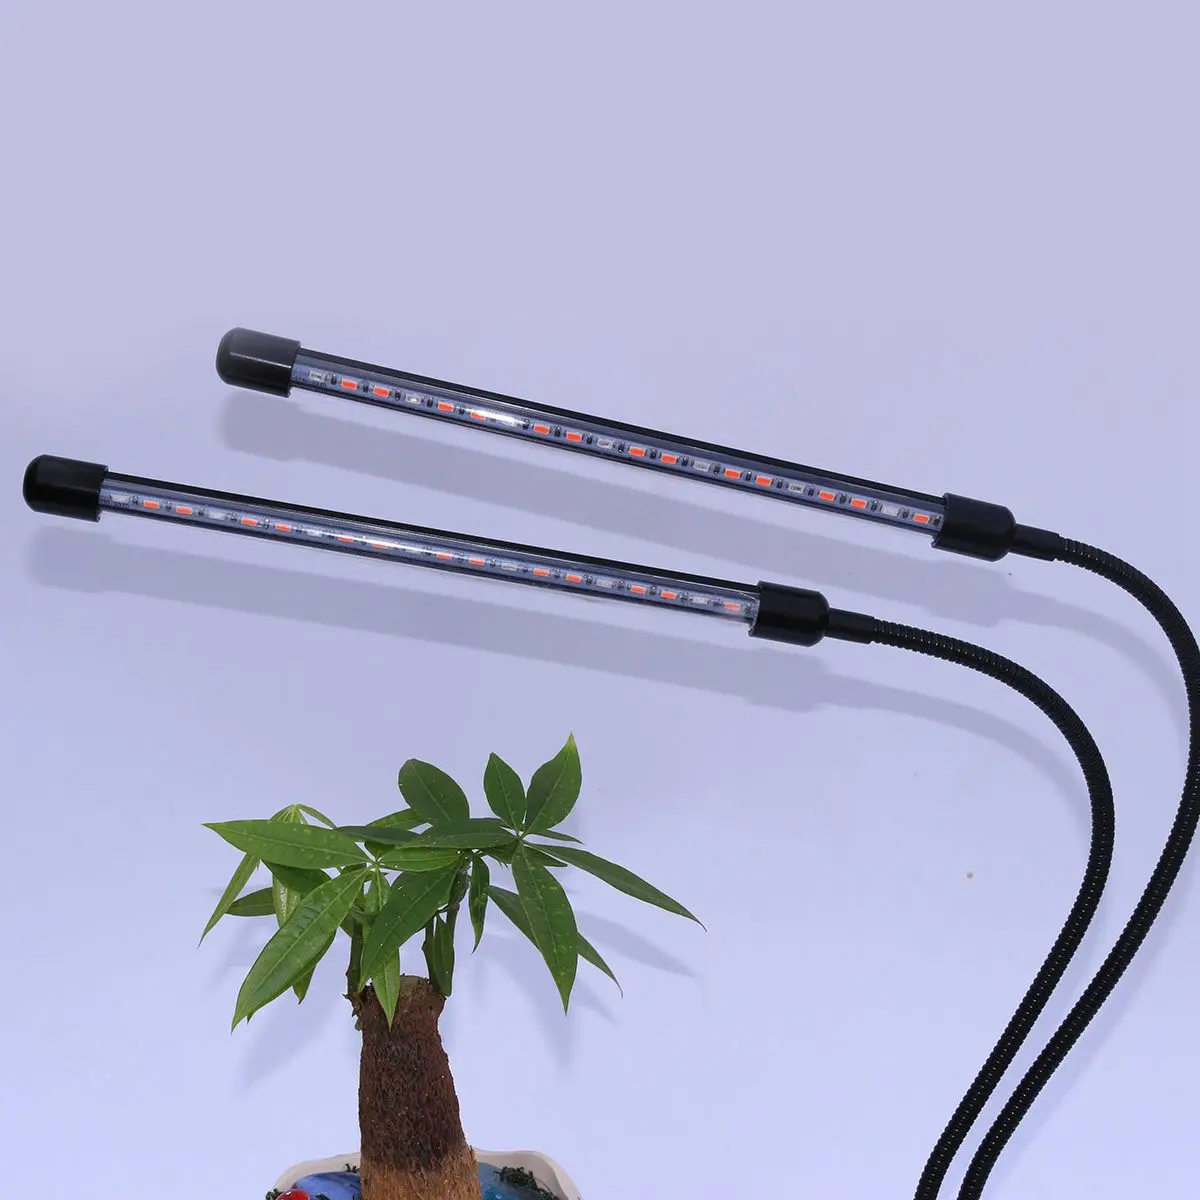 2018 обновленная 18 W Dual Head синхронизации светодиодный растет светильник 40 светодиодный фишки с красный/синий спектр для комнатных растений